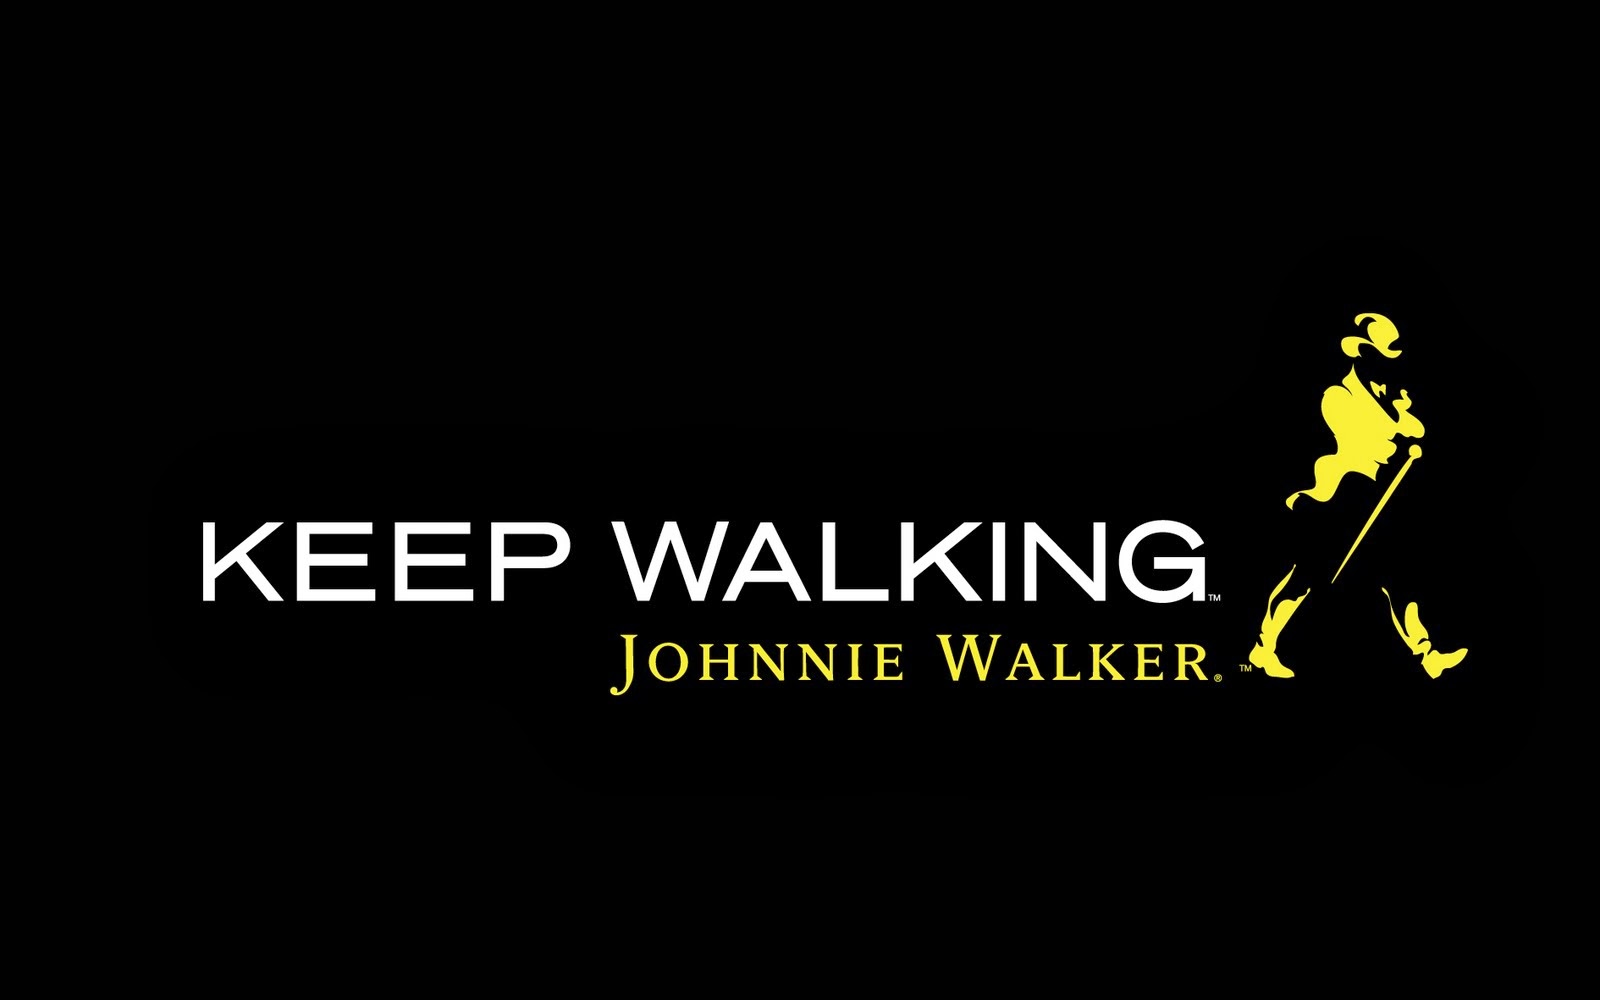 Johnnie Walker!